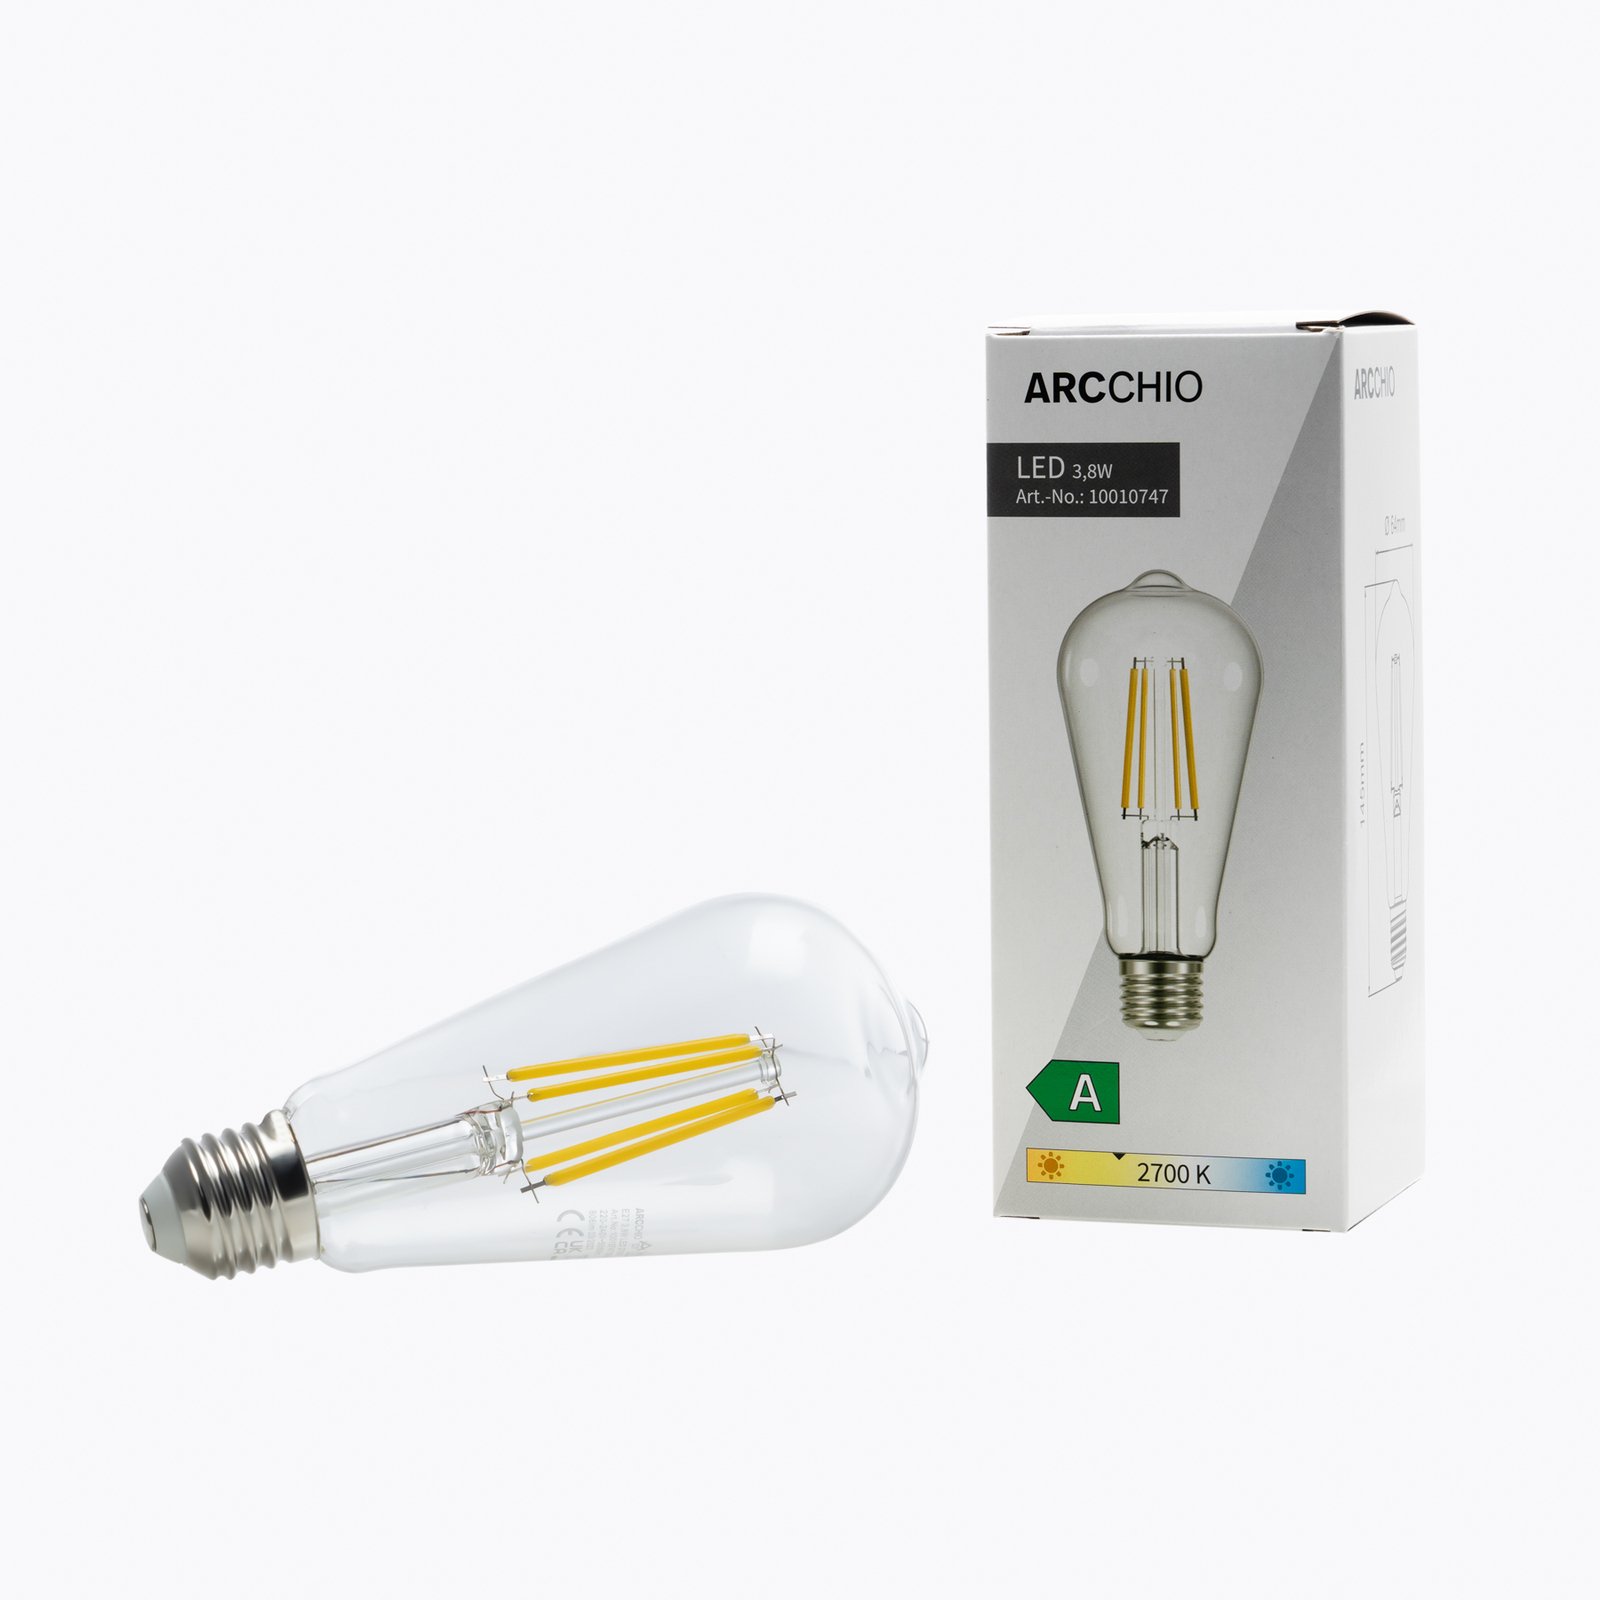 Arcchio LED-rustiklampa klar E27 3,8W 2700 K 806lm